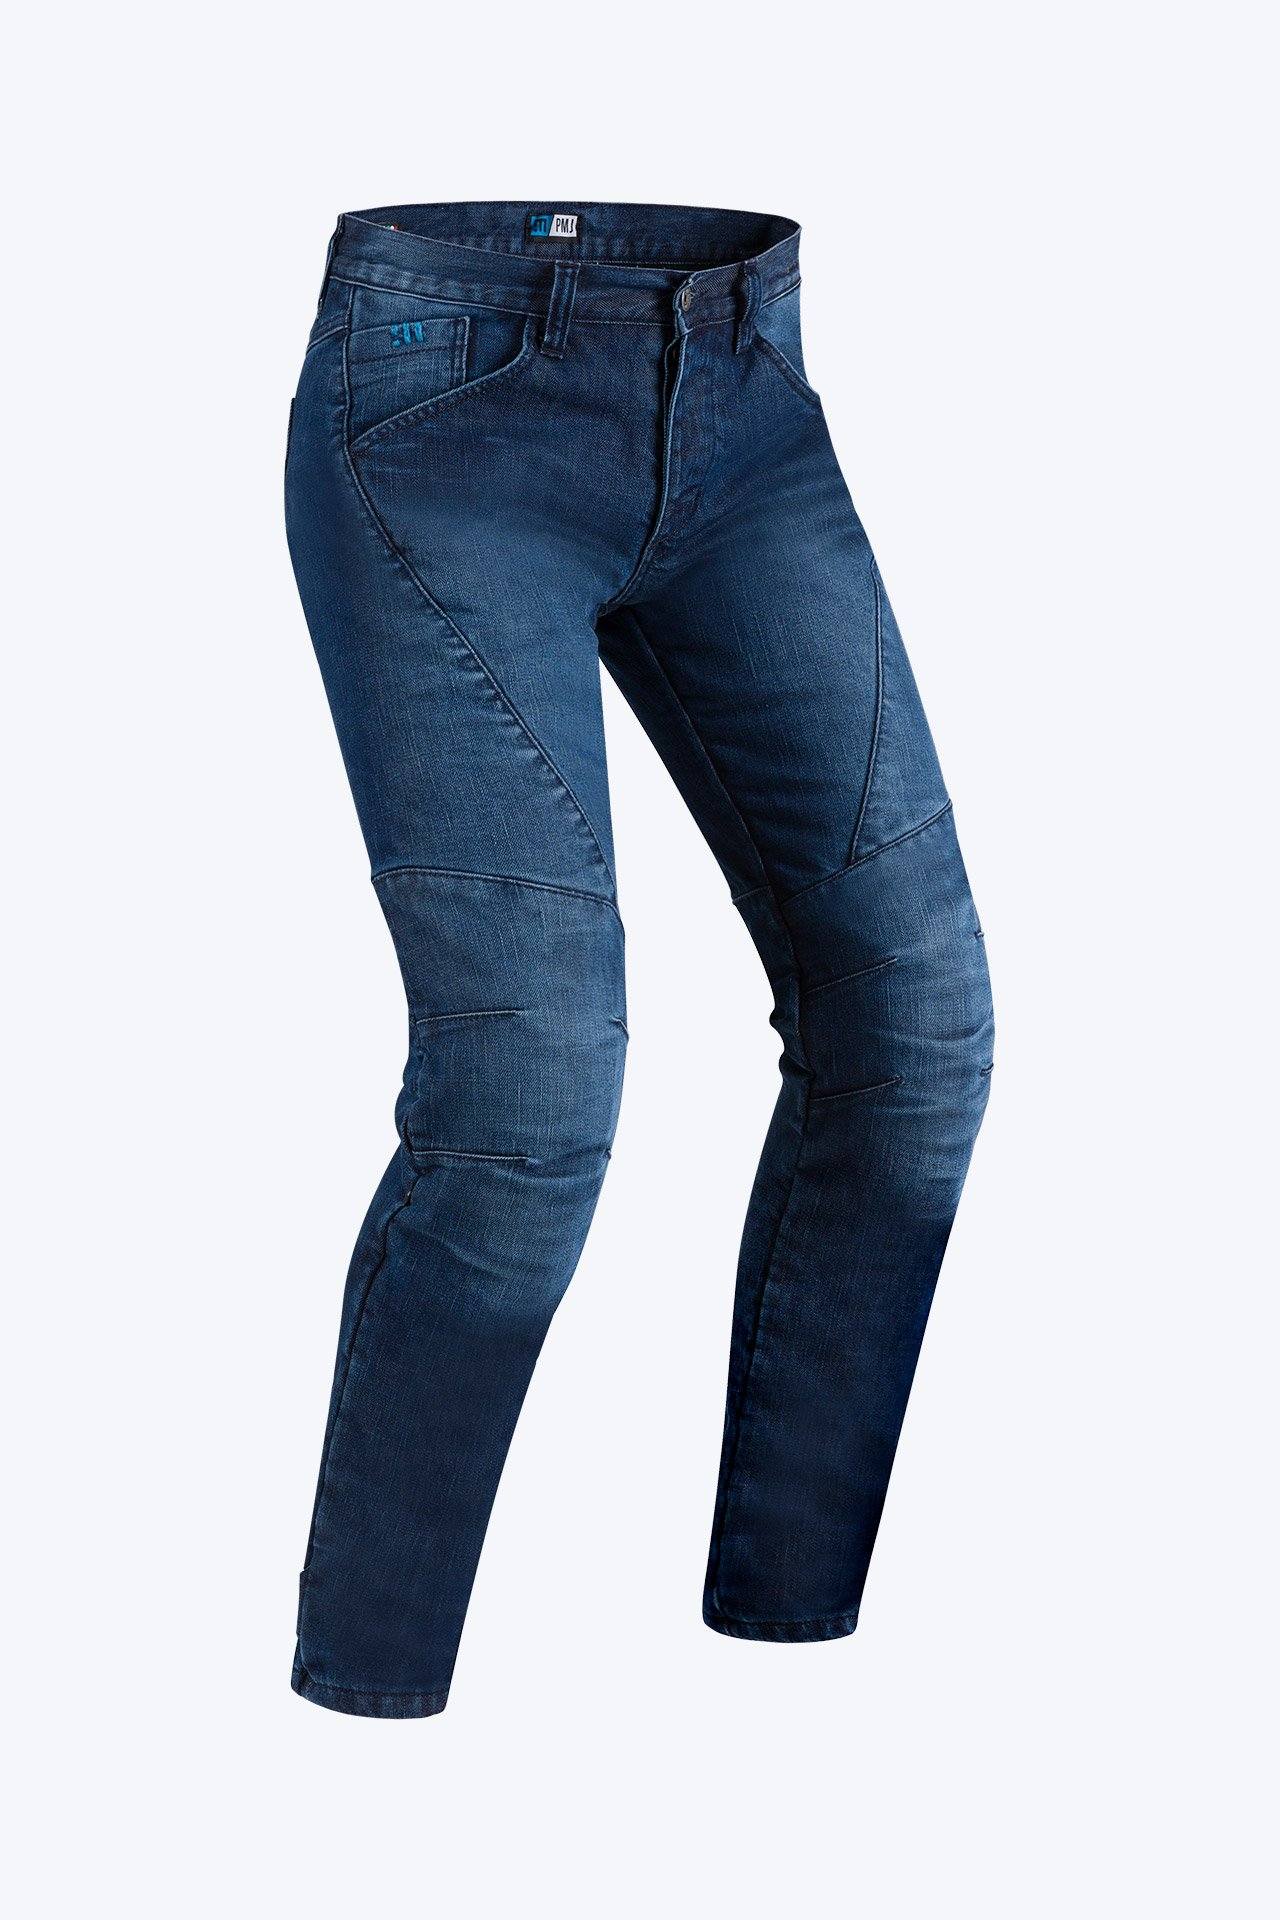 PMJ JEANS TITANIIUM,jeans, #collections#, -spazio moto- bastia umbra - perugia